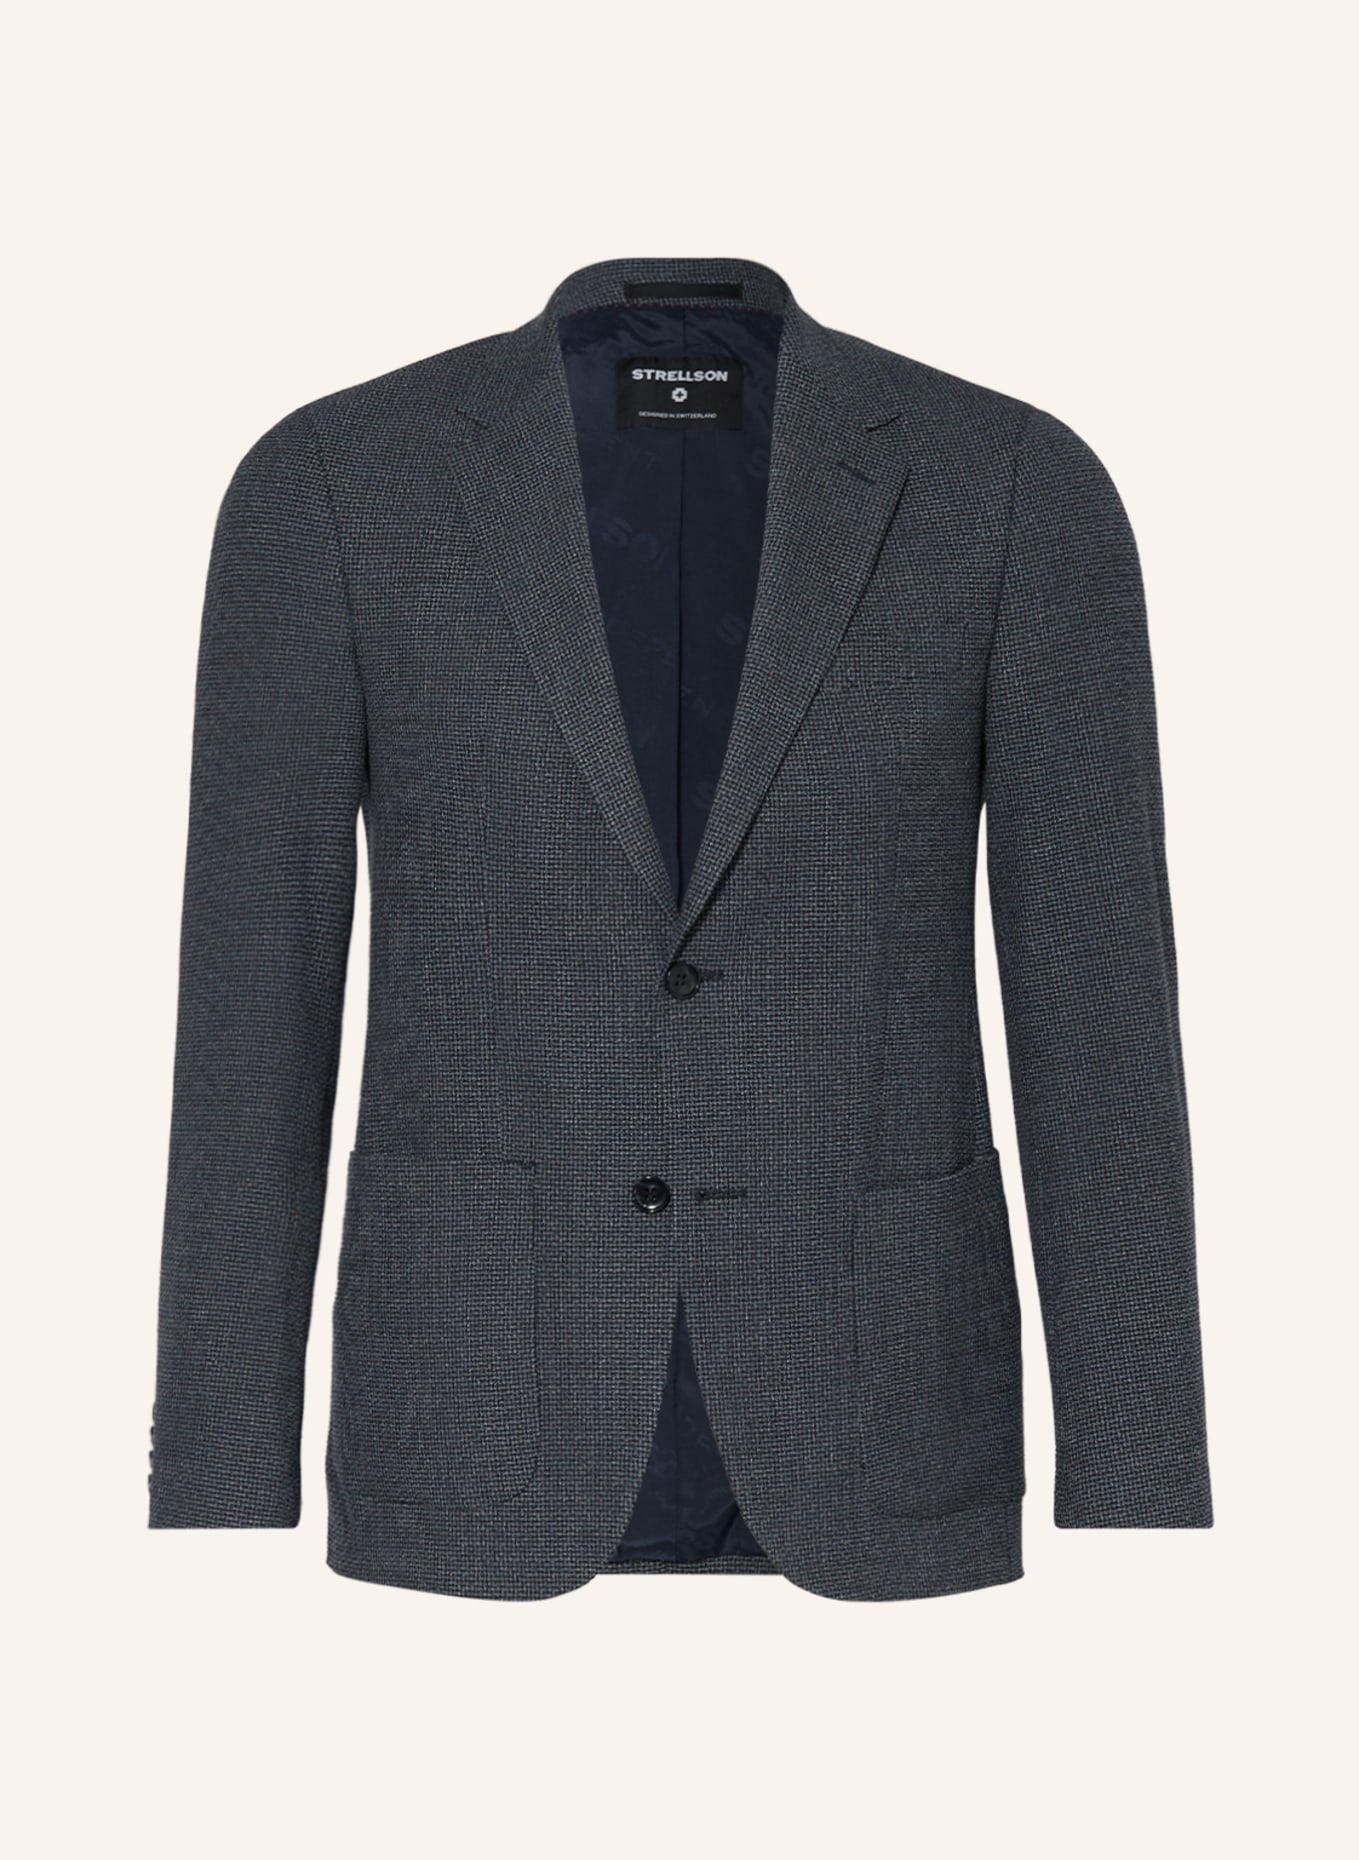 STRELLSON Suit jacket ARNDT2 slim fit , Color: 402 Dark Blue                  402 (Image 1)